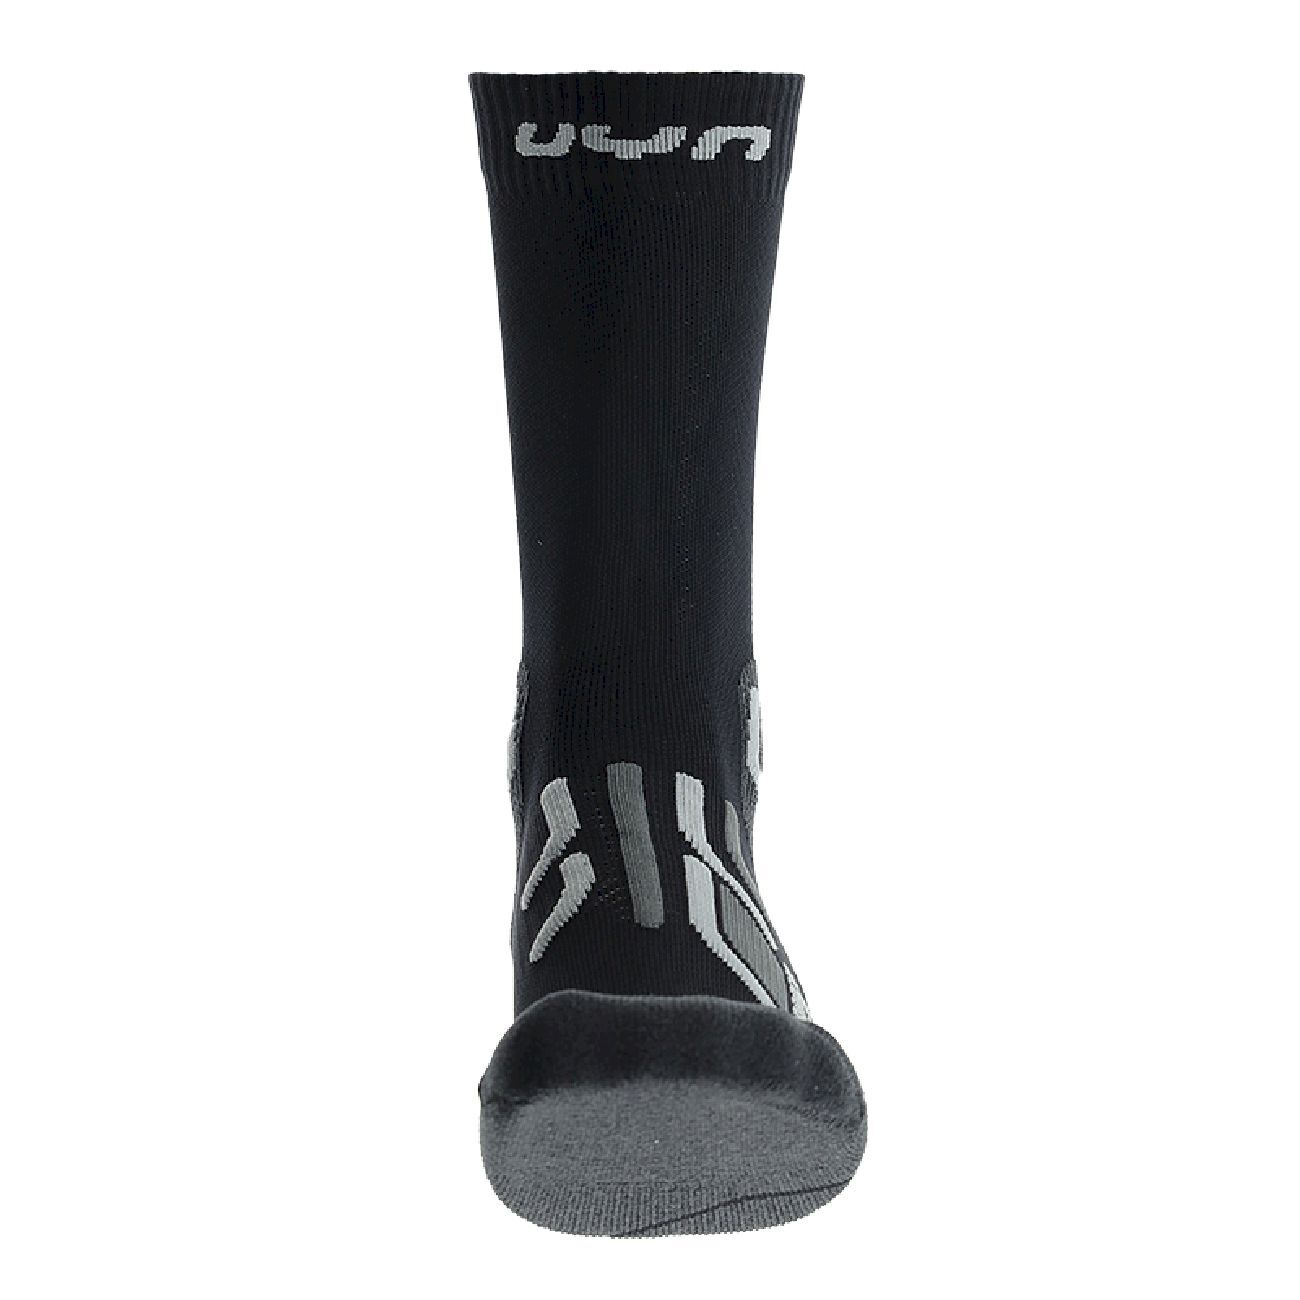 Uyn SMU Trekking Approach Socks - Hiking socks - Women's